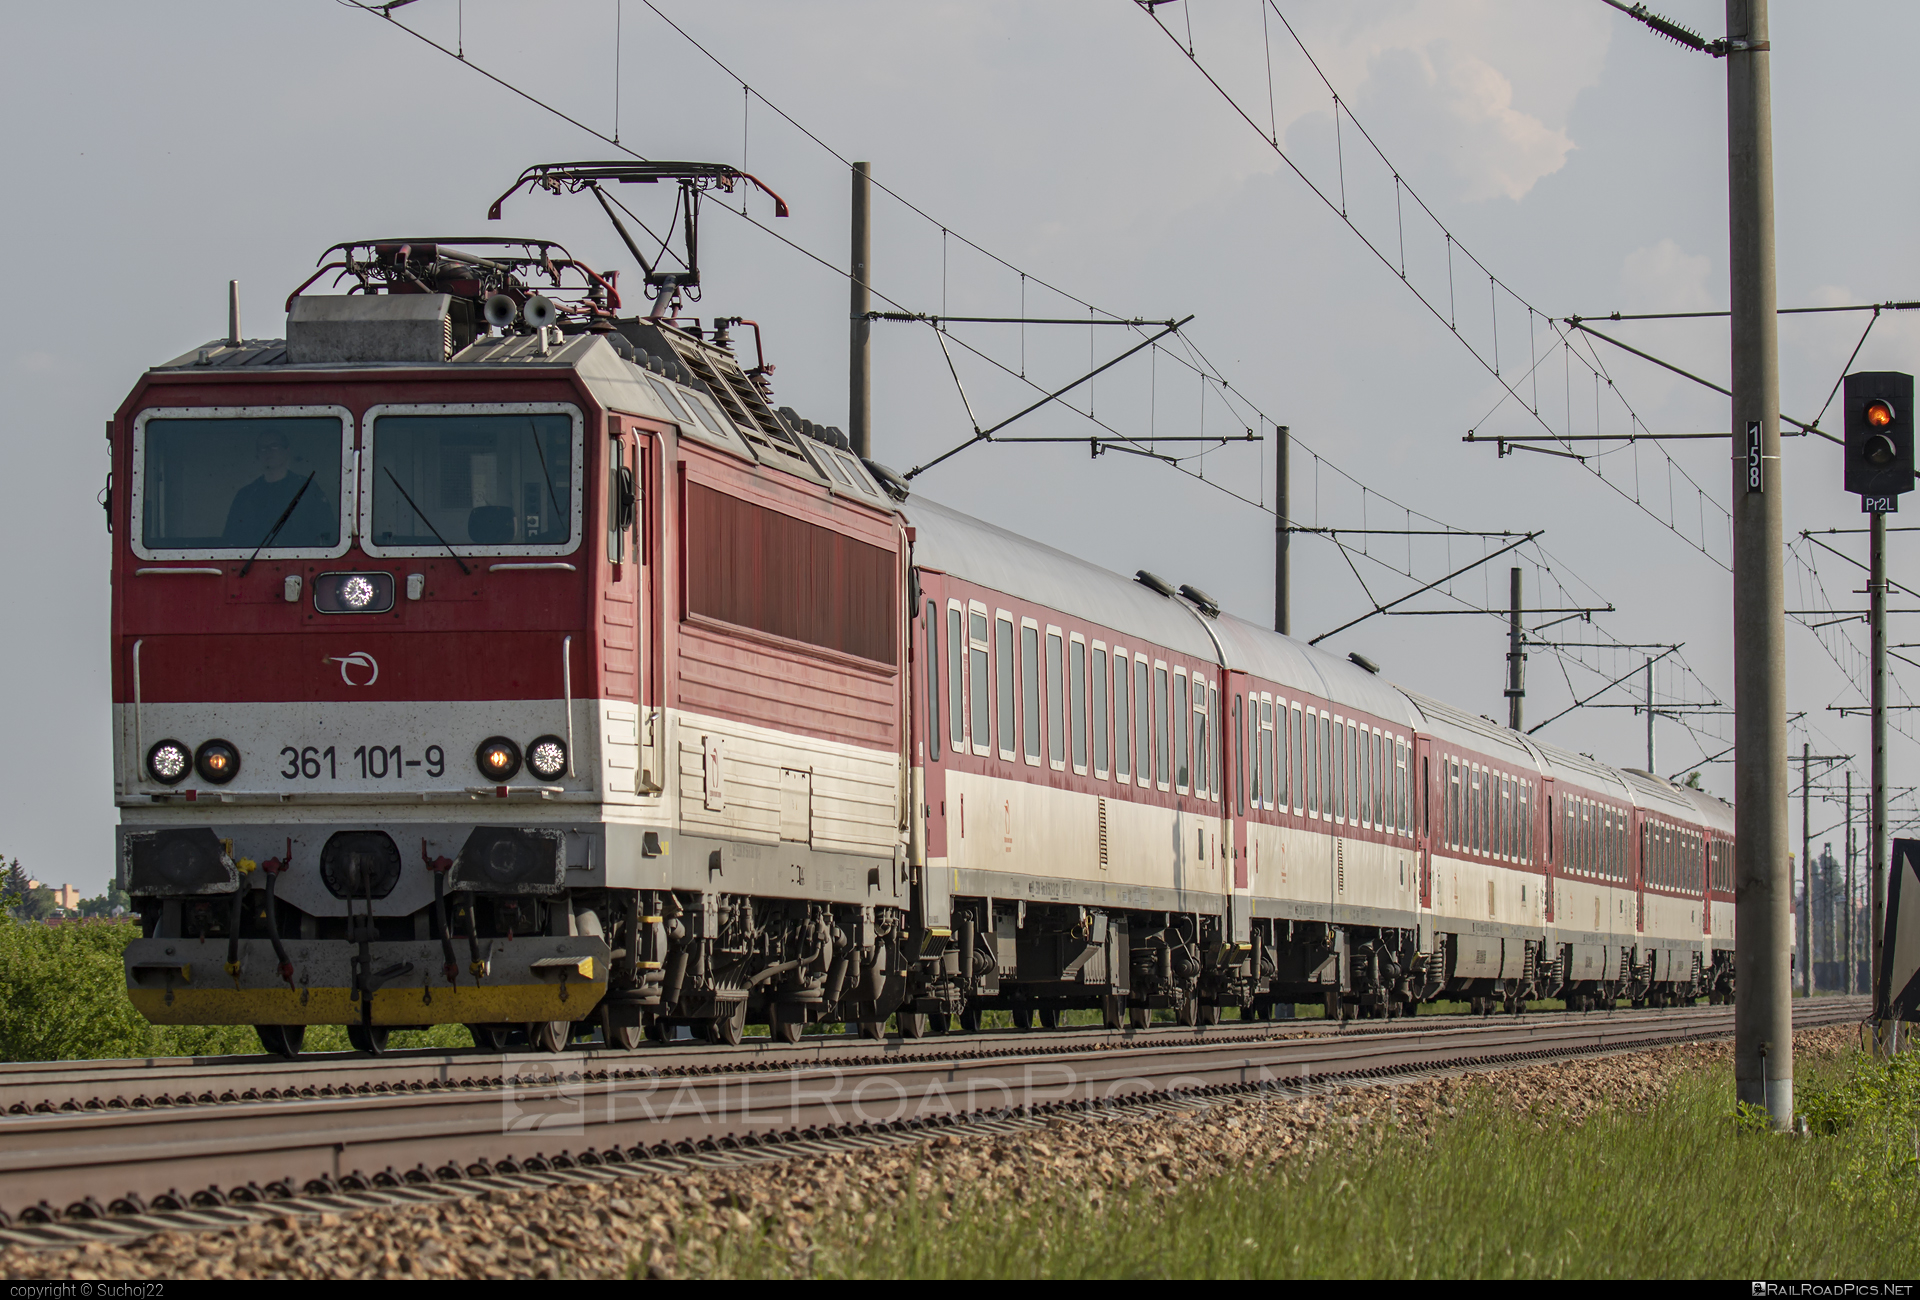 ŽOS Vrútky Class 361.1 - 361 101-9 operated by Železničná Spoločnost' Slovensko, a.s. #ZeleznicnaSpolocnostSlovensko #locomotive361 #locomotive3611 #zosvrutky #zssk